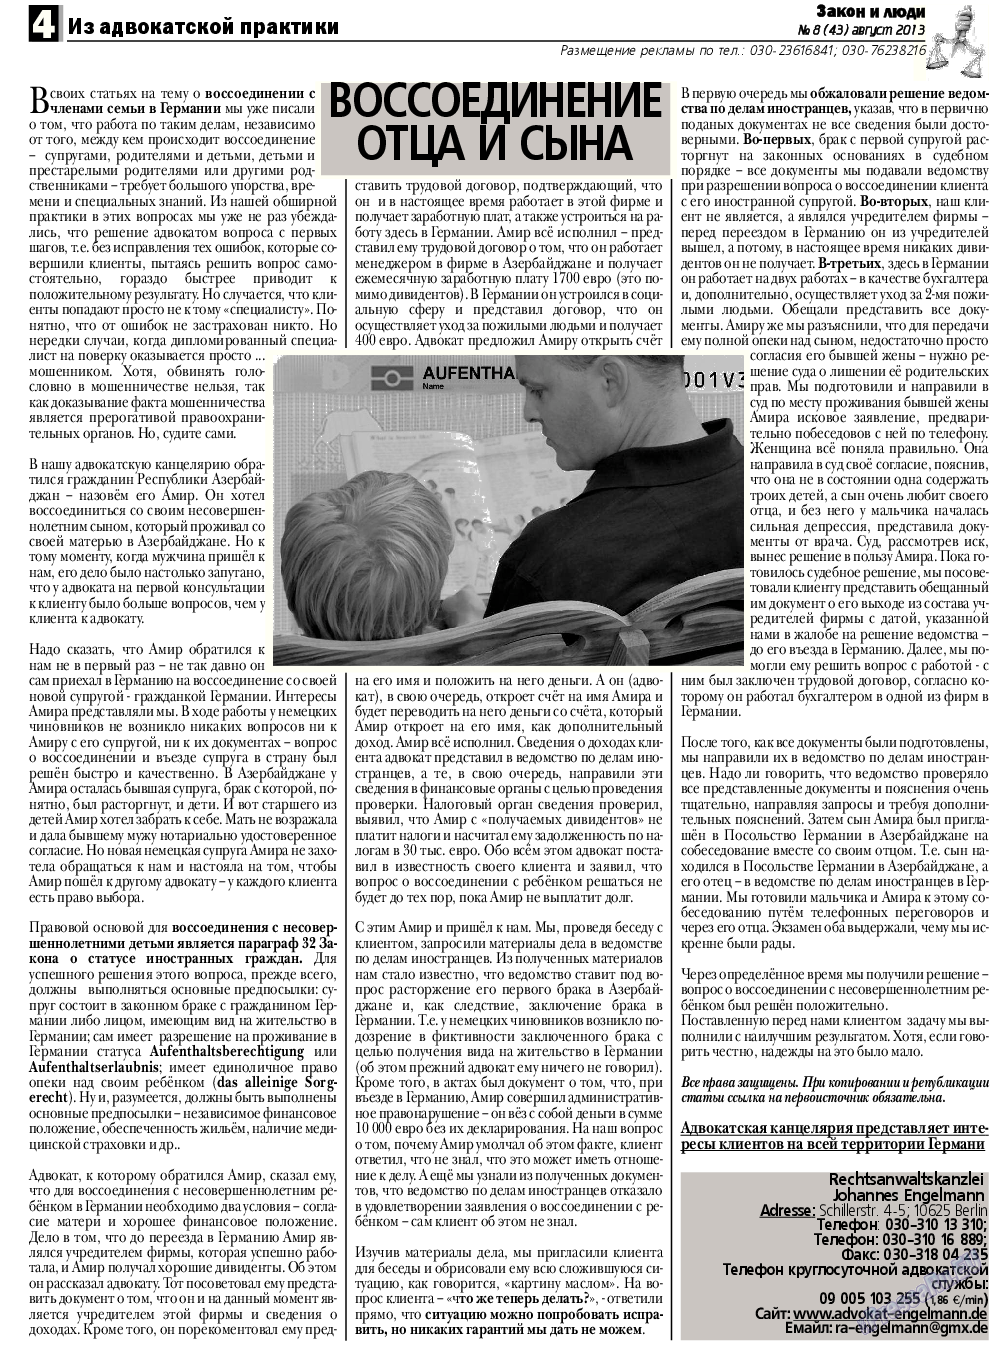 Закон и люди, газета. 2013 №8 стр.4